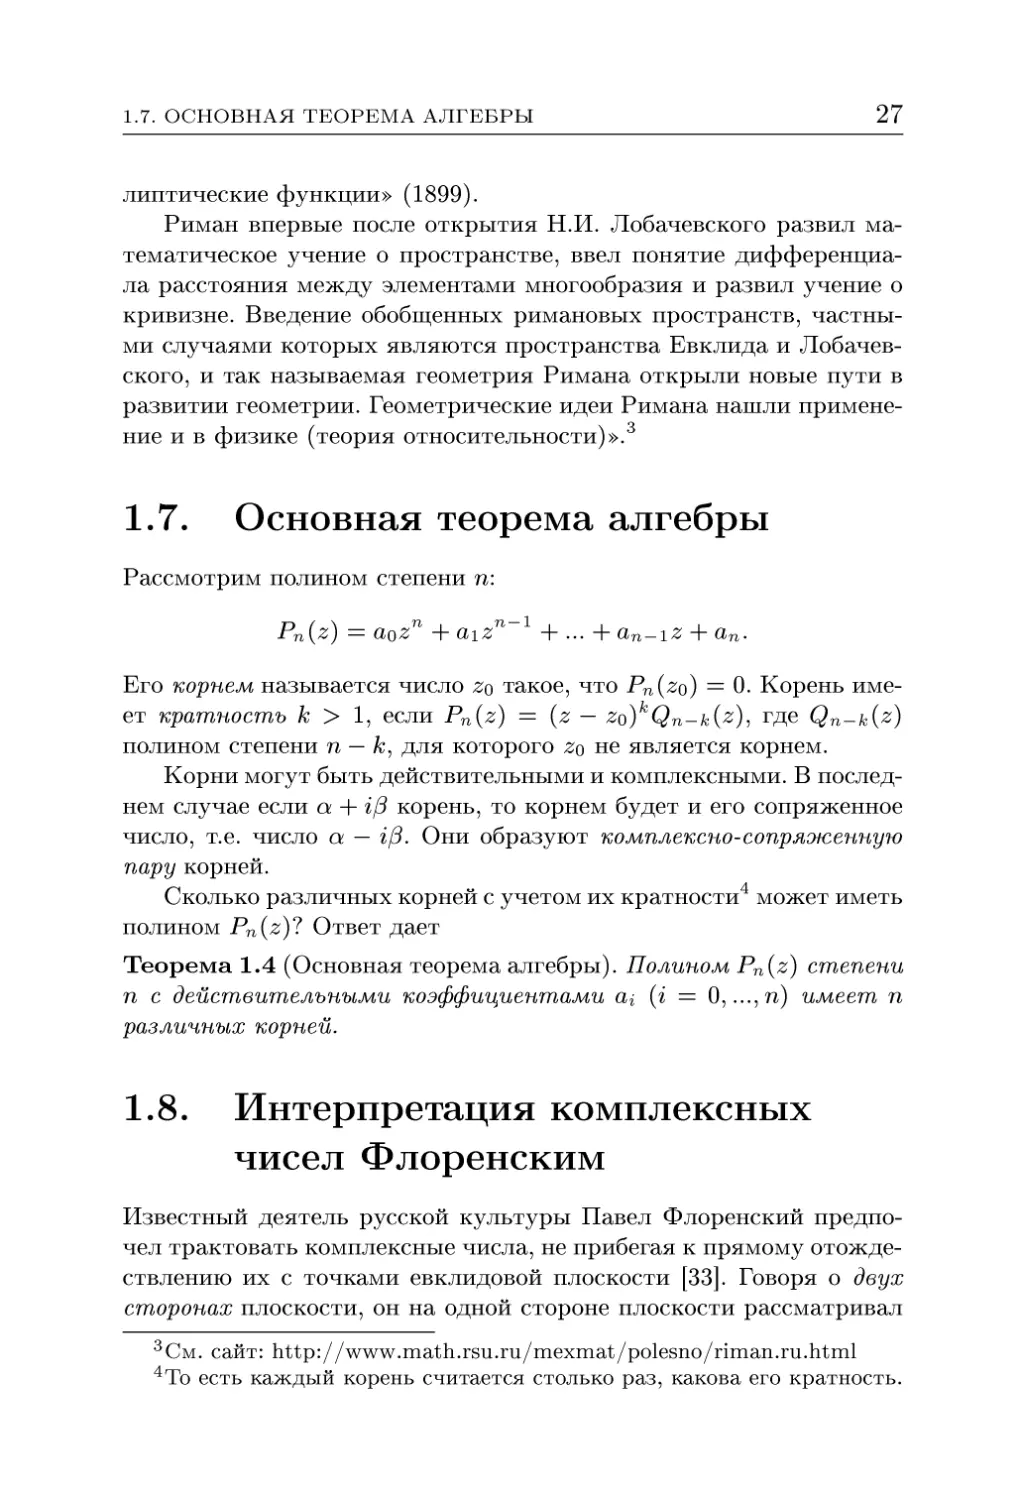 1.7. Основная теорема алгебры
1.8. Интерпретация комплексных чисел Флоренским